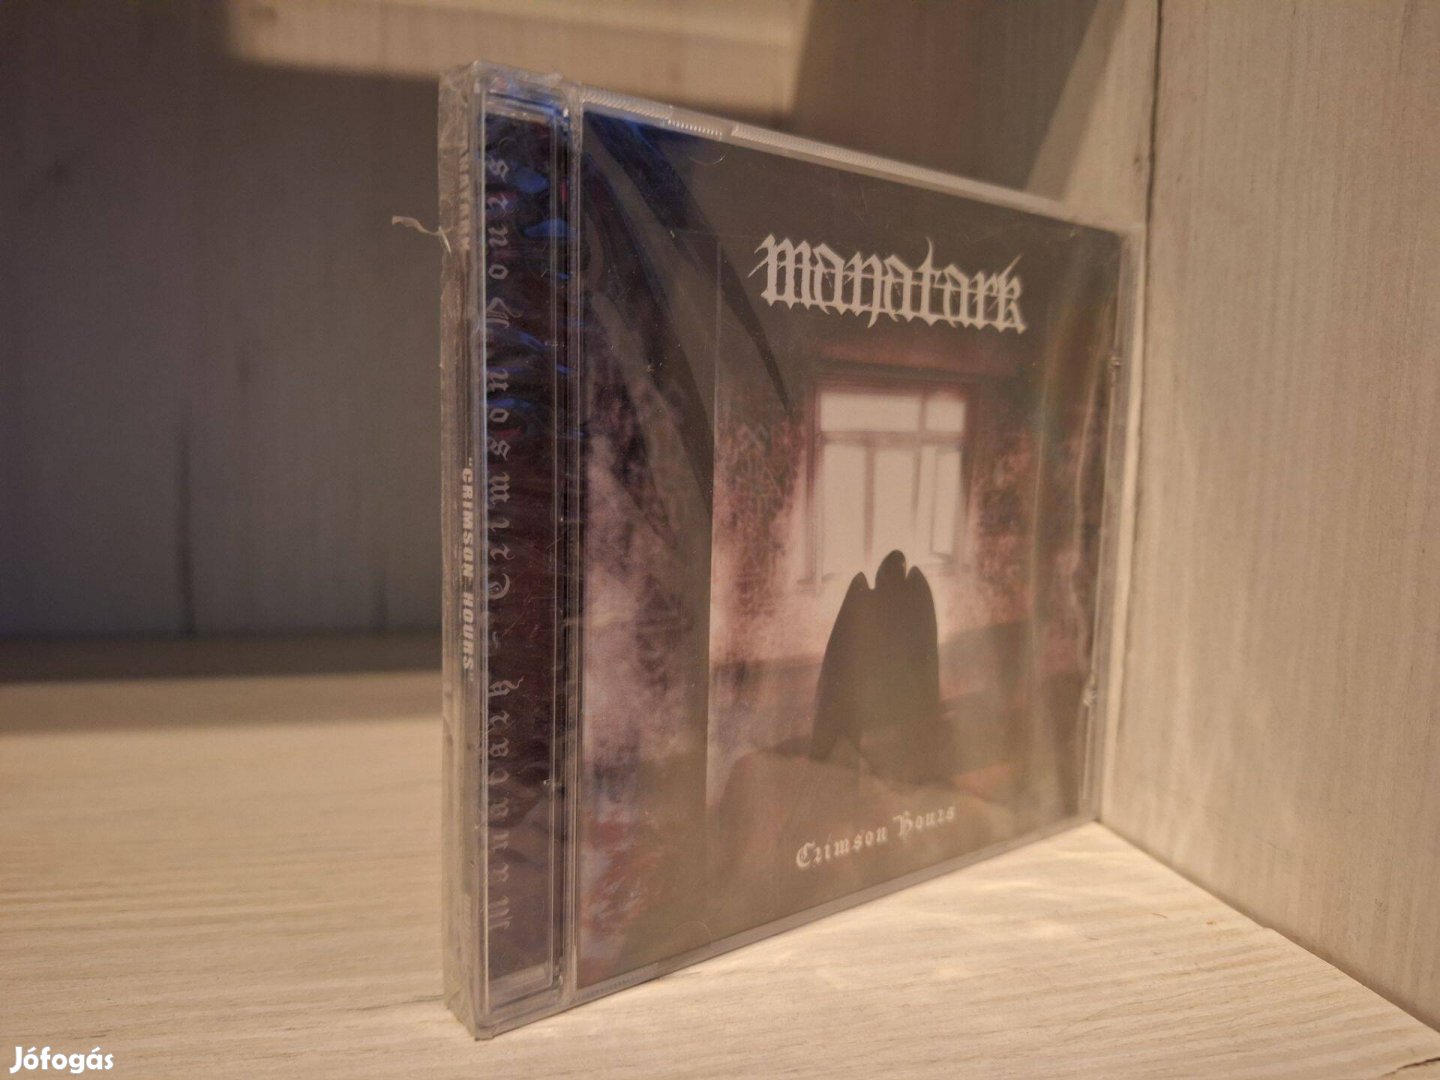 Manatark - Crimson Hours - Új CD